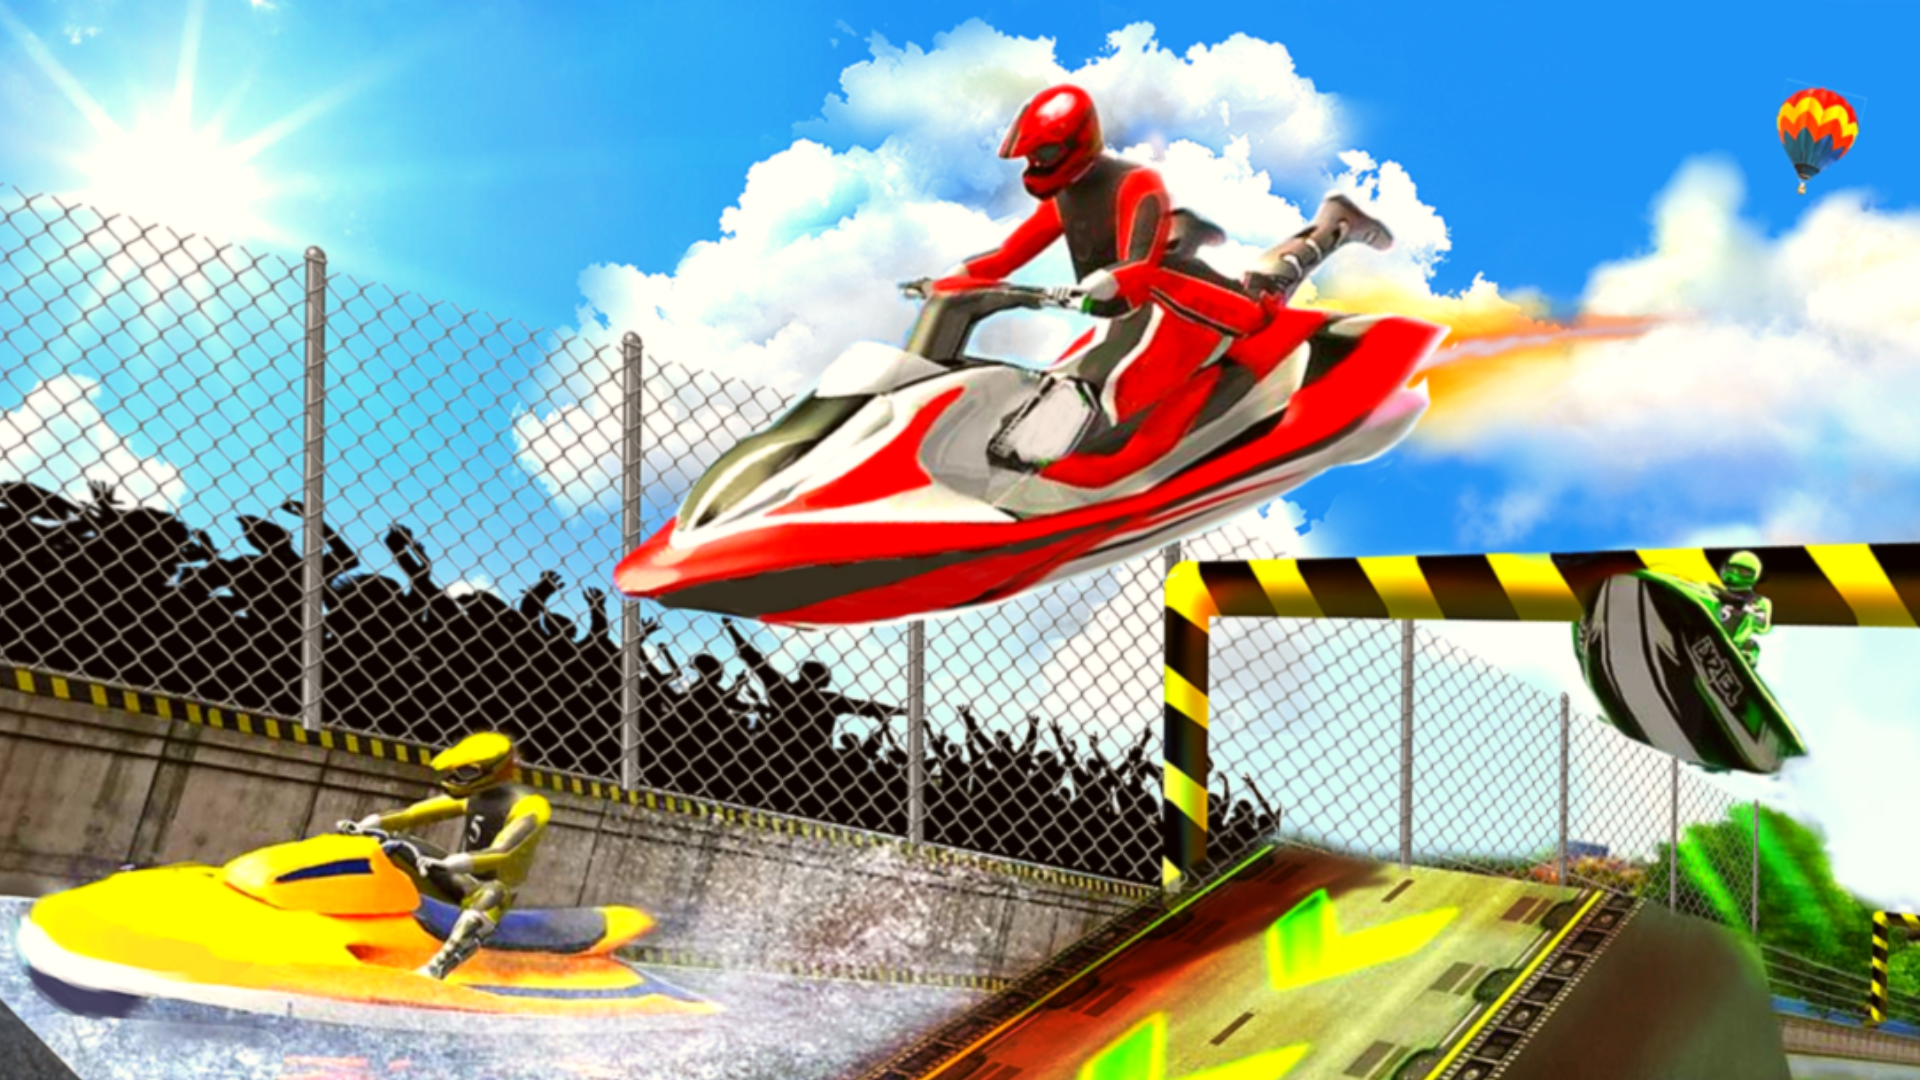 Speed Boat Racing-Jet Ski Race